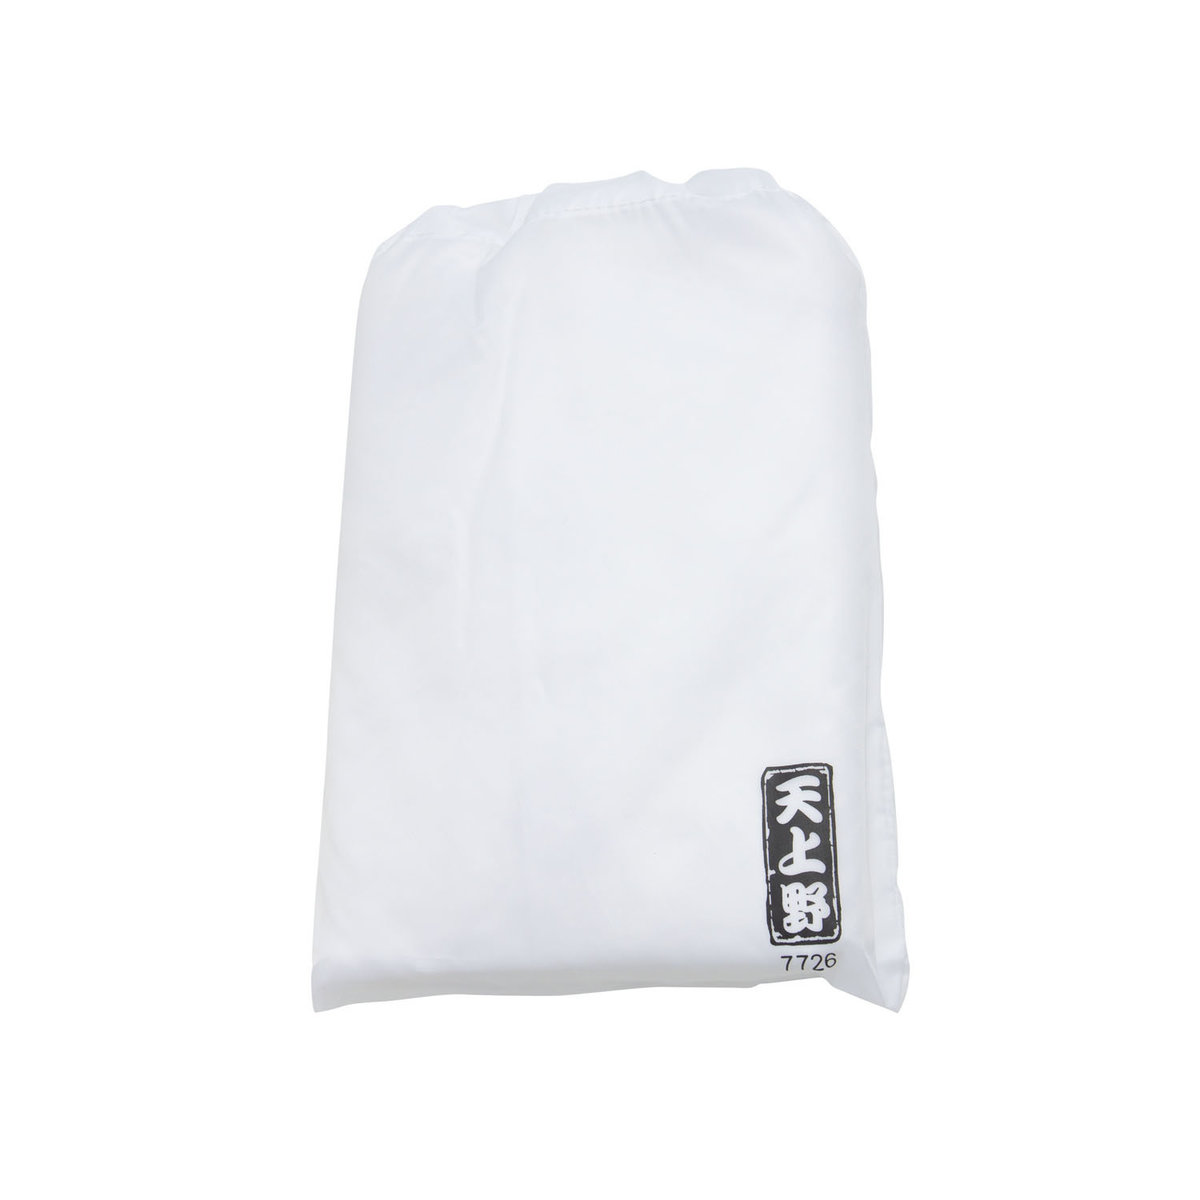 乾衣袋-晾曬架型號7726適用